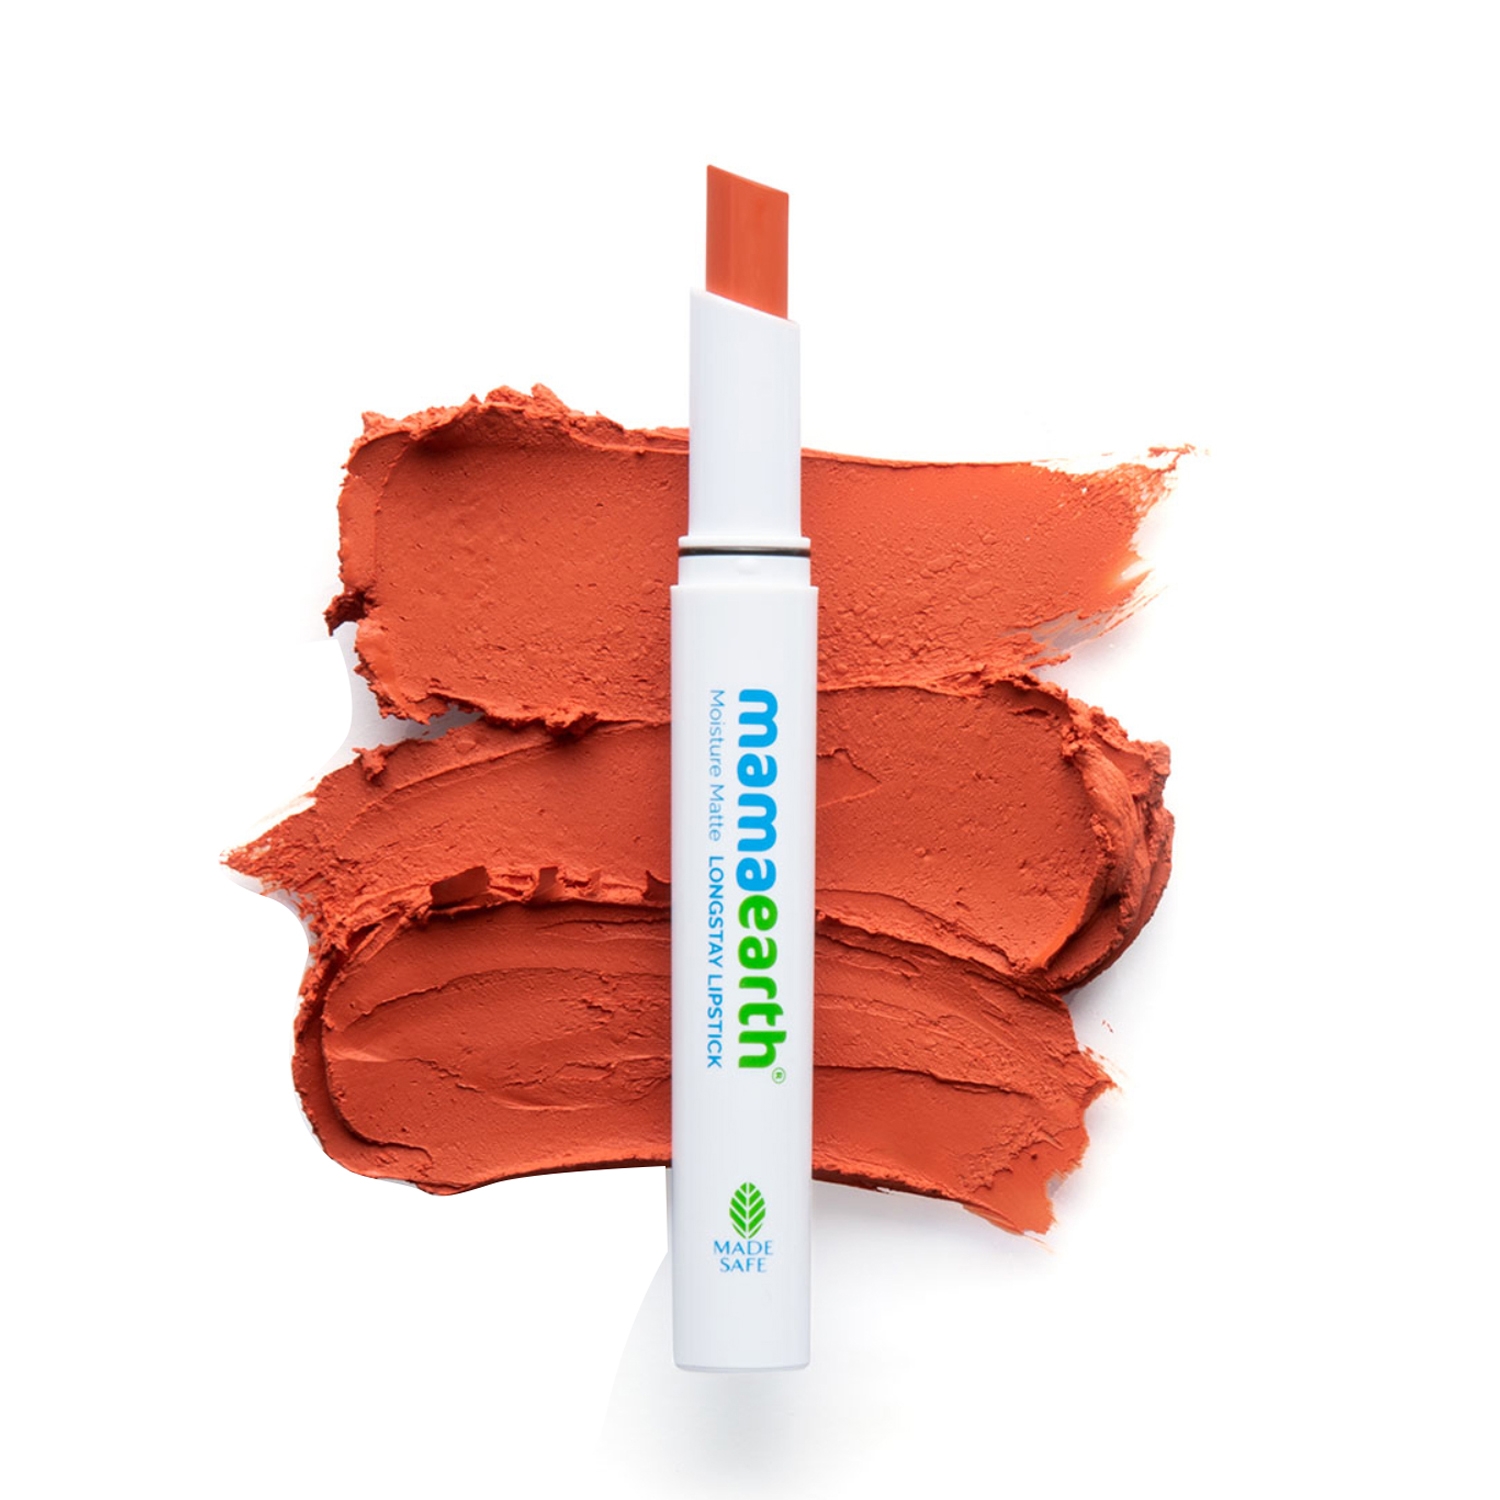 Mamaearth | Mamaearth Moisture Matte Longstay Lipstick With Avocado Oil & Vitamin E - 13 Citrus Nude (2g)